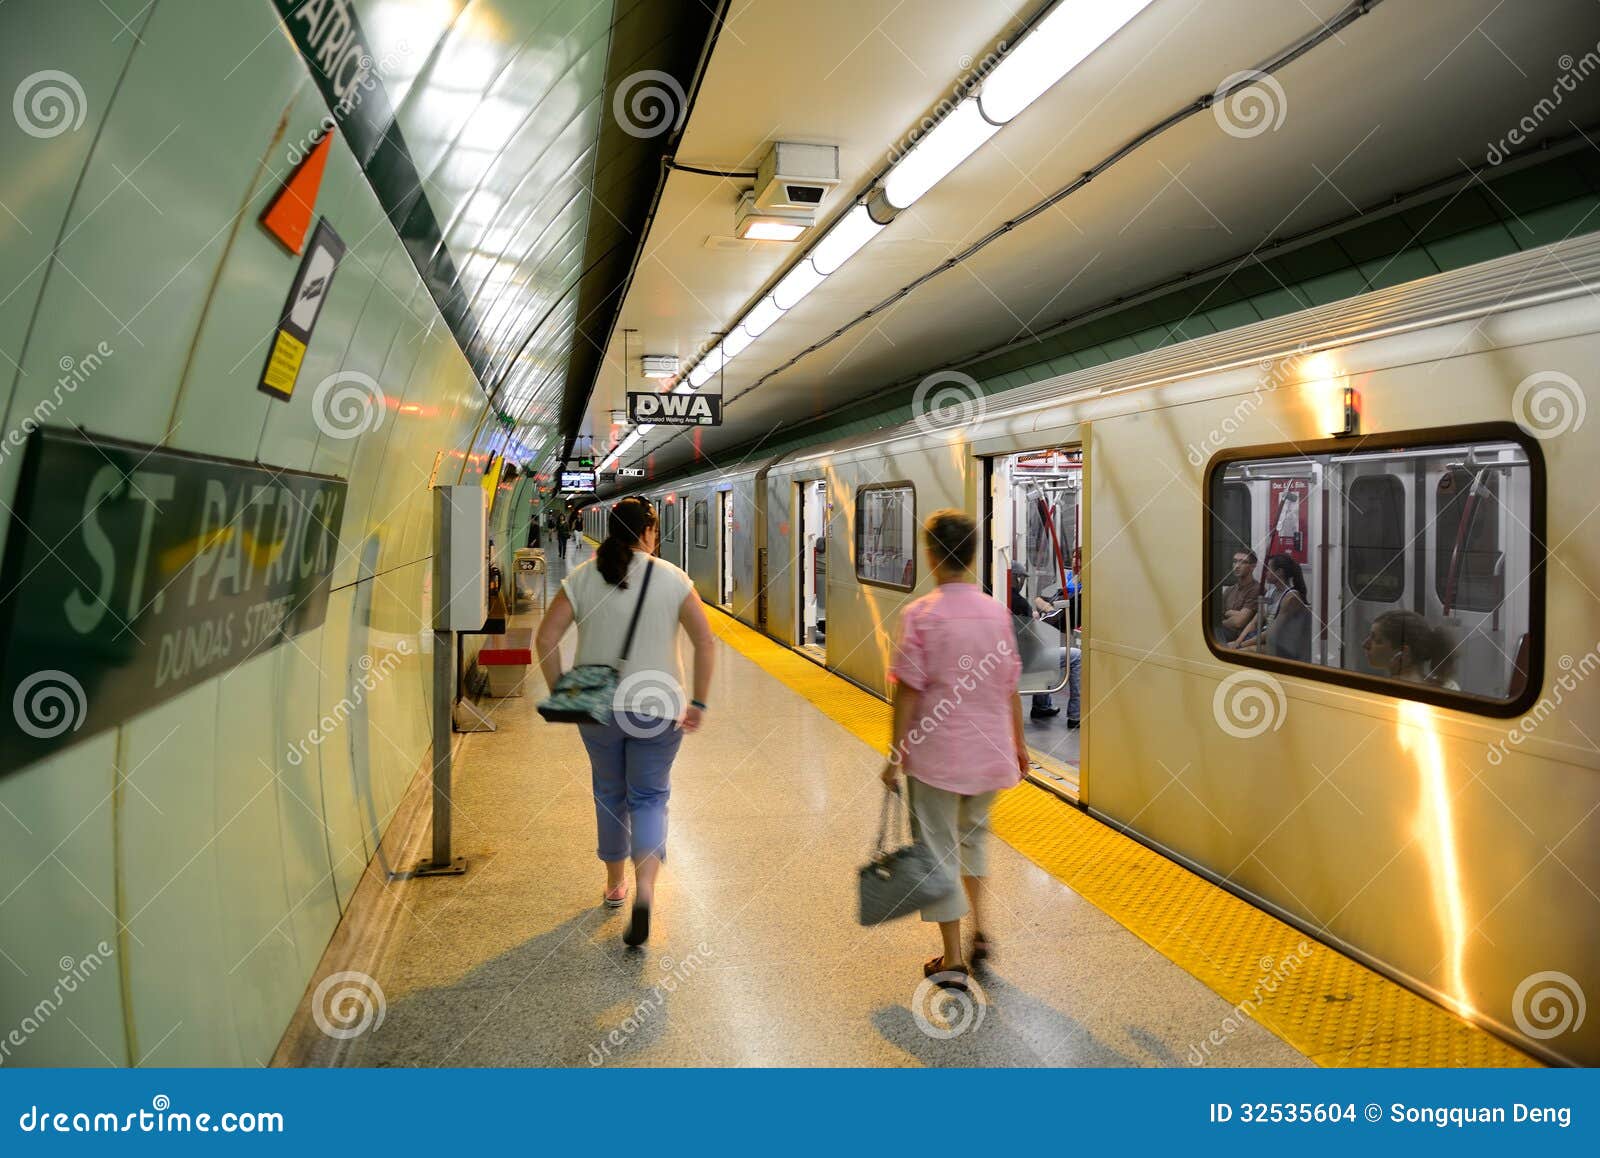 多伦多地铁内部 图库摄影片. 图片 包括有 加拿大, 背包, 机构, 多伦多, 建筑, 乘客, 内部, 街市 - 130130372